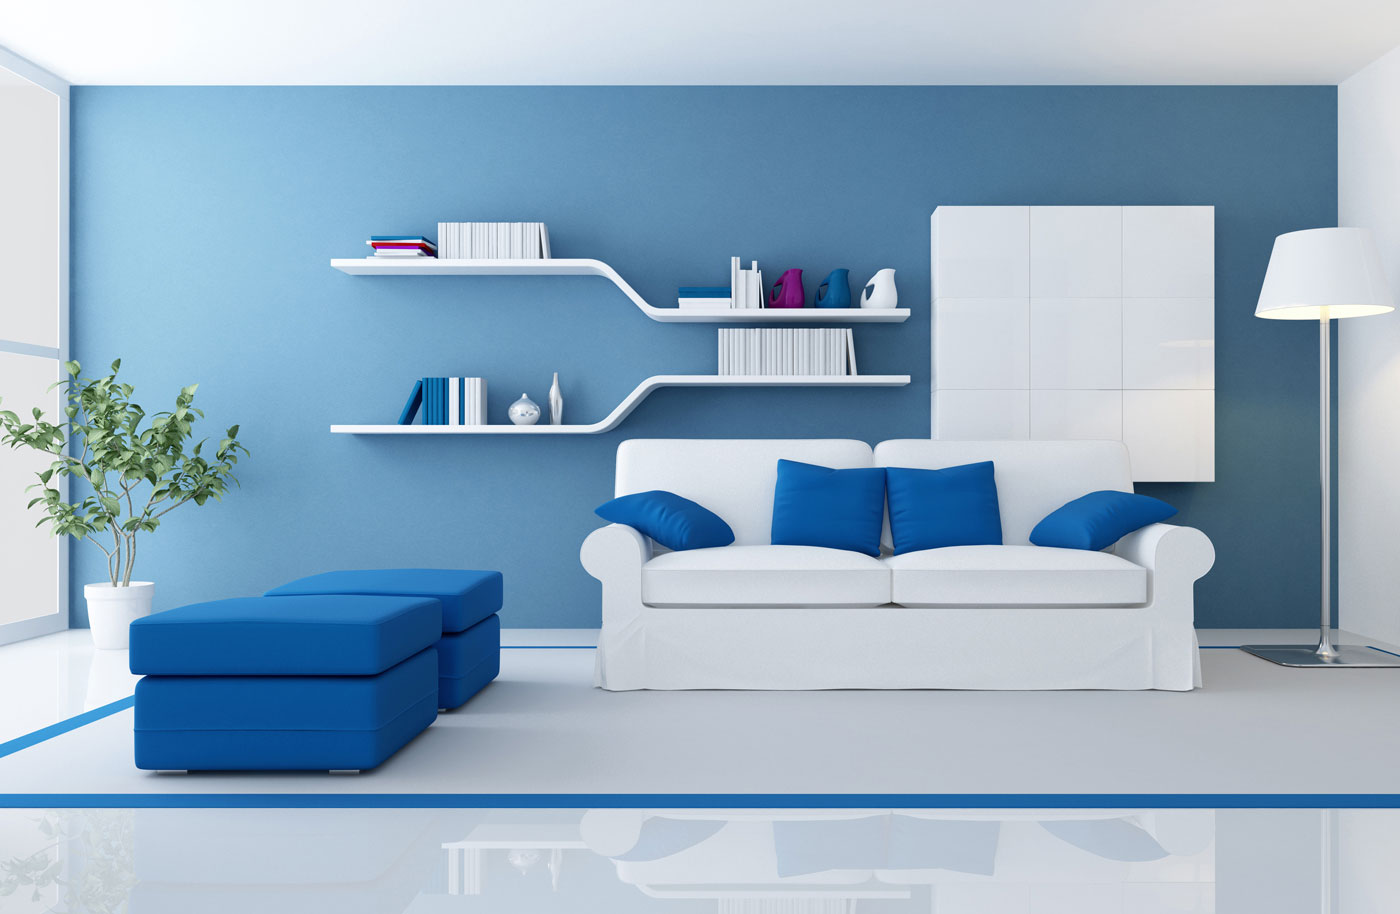 Với dịch vụ sơn ngói Bluezone chất lượng cao của chúng tôi, ngôi nhà của bạn sẽ trở nên đẹp và bền chắc hơn bao giờ hết. Bạn sẽ không phải lo lắng về các vấn đề như rò rỉ, bám bụi hay mực nước nữa.